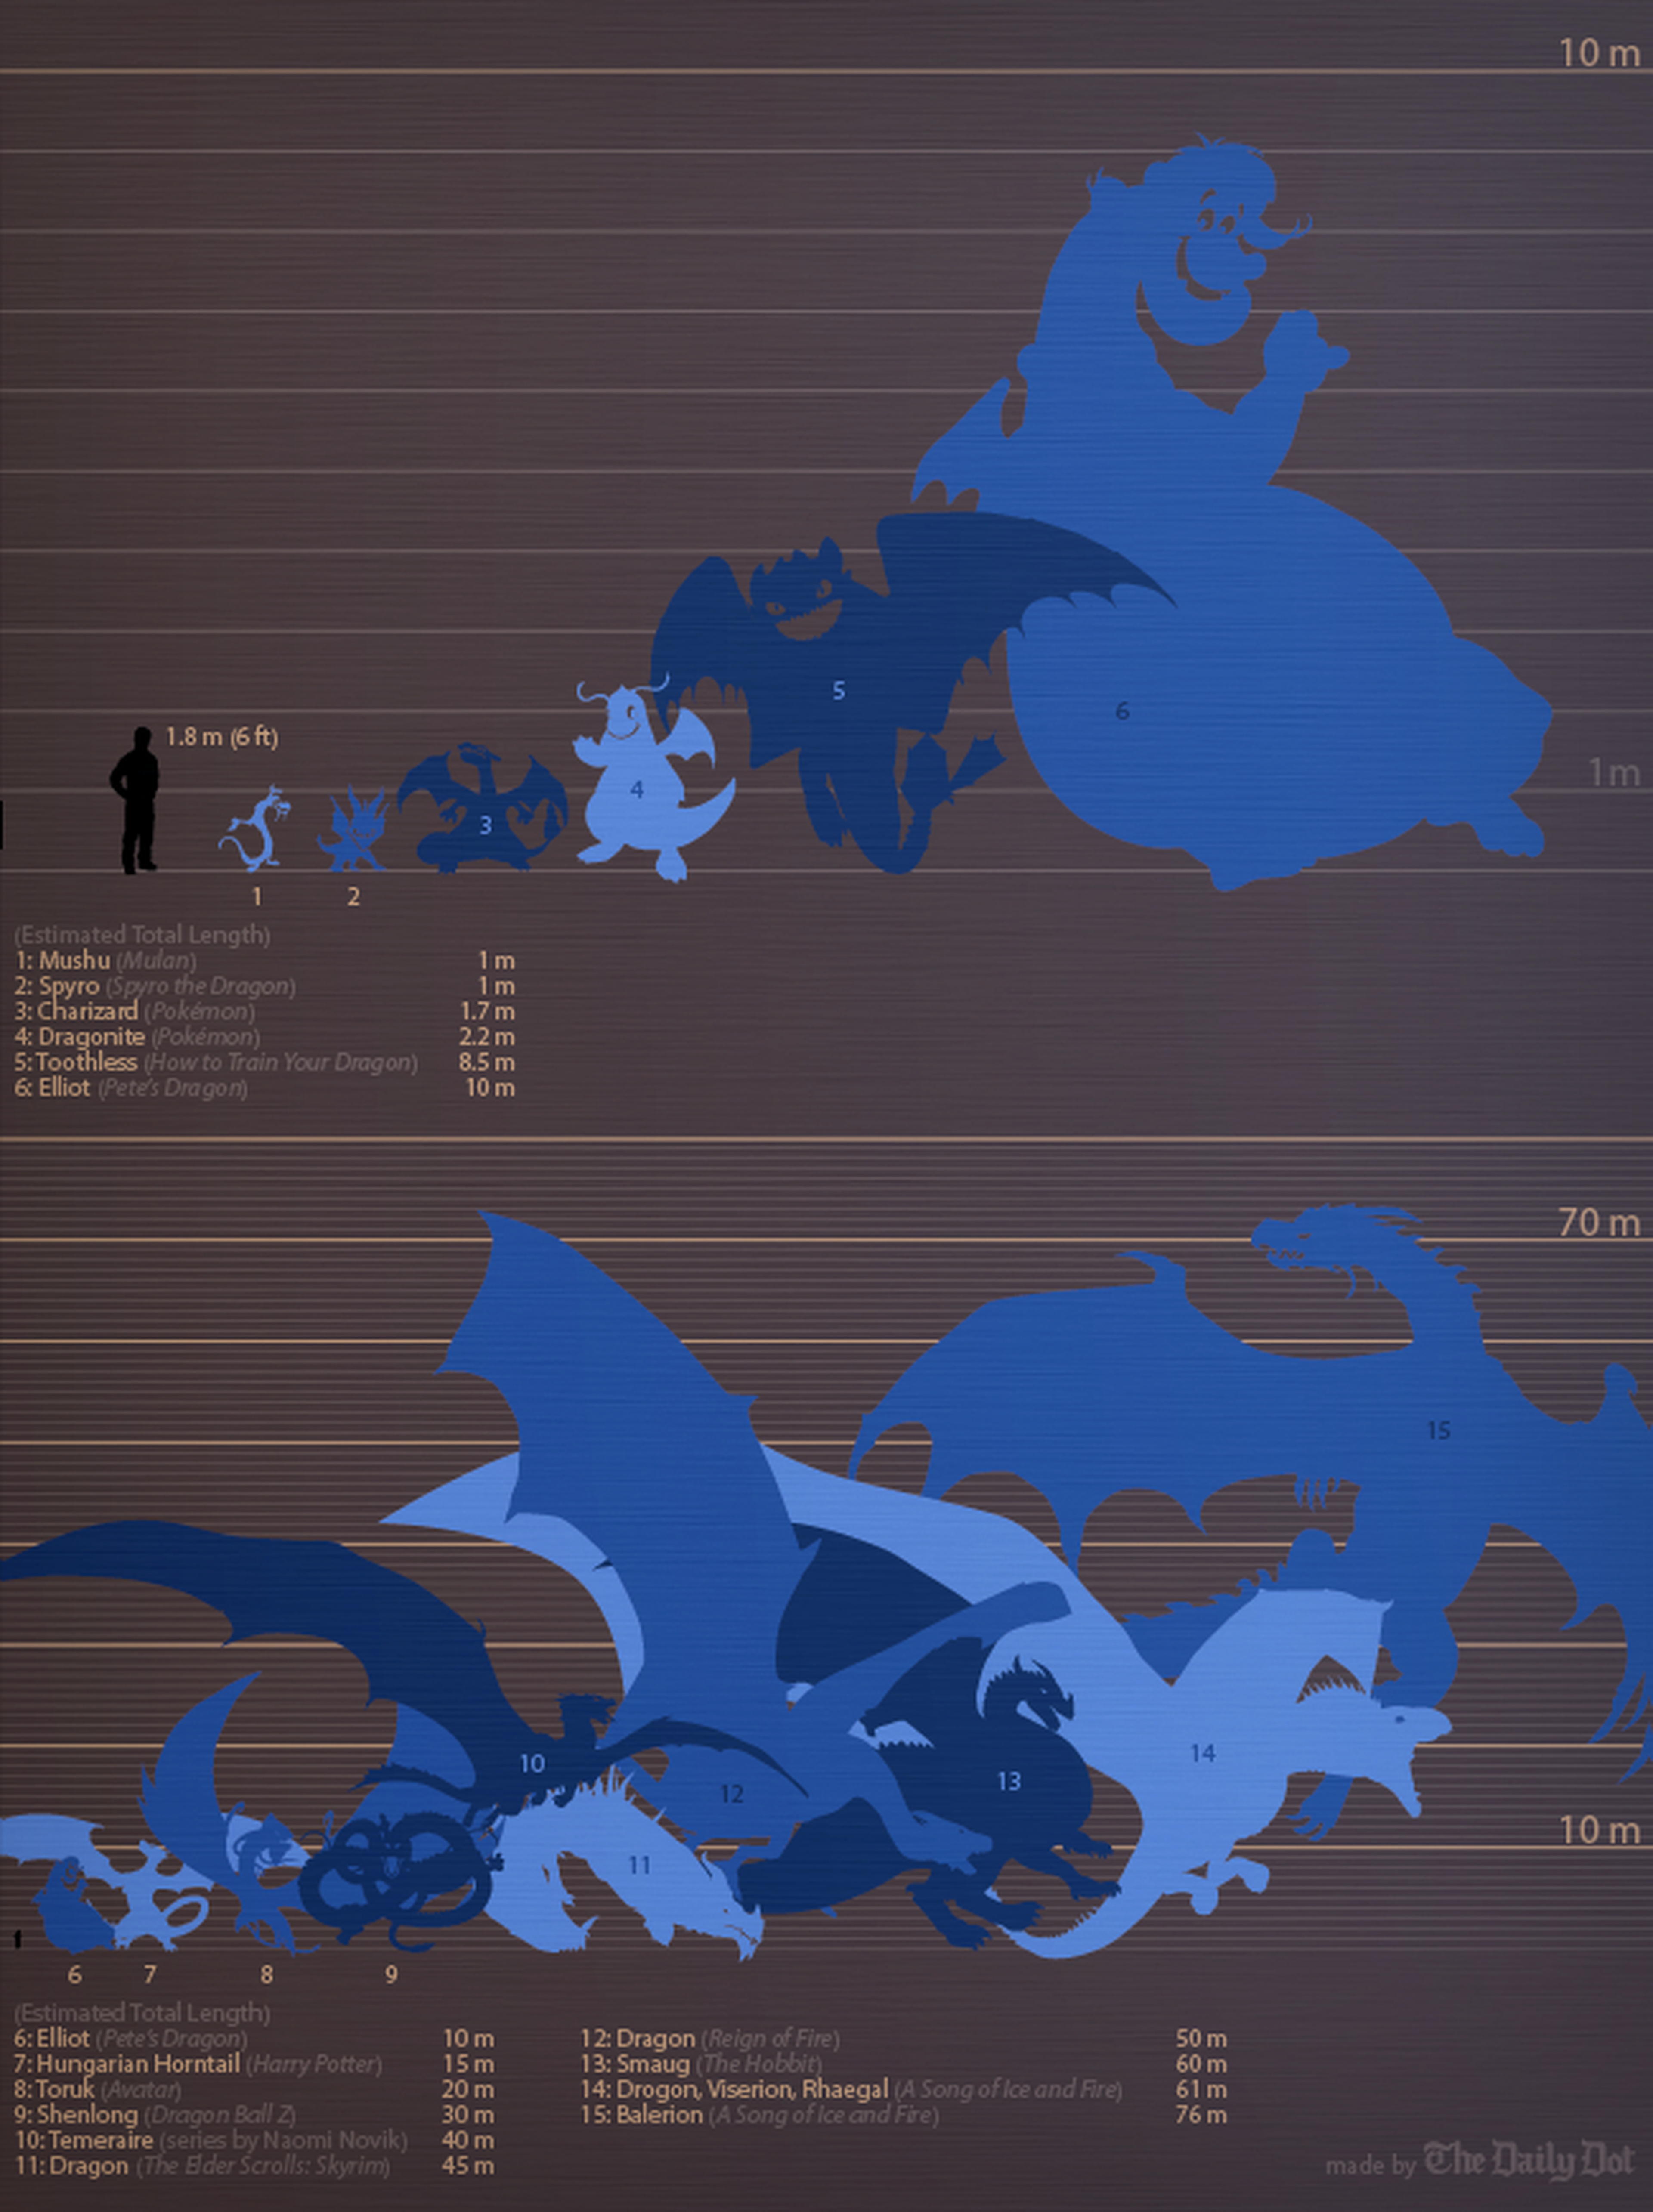 Comparativa de tamaño entre dragones del cine y videojuegos